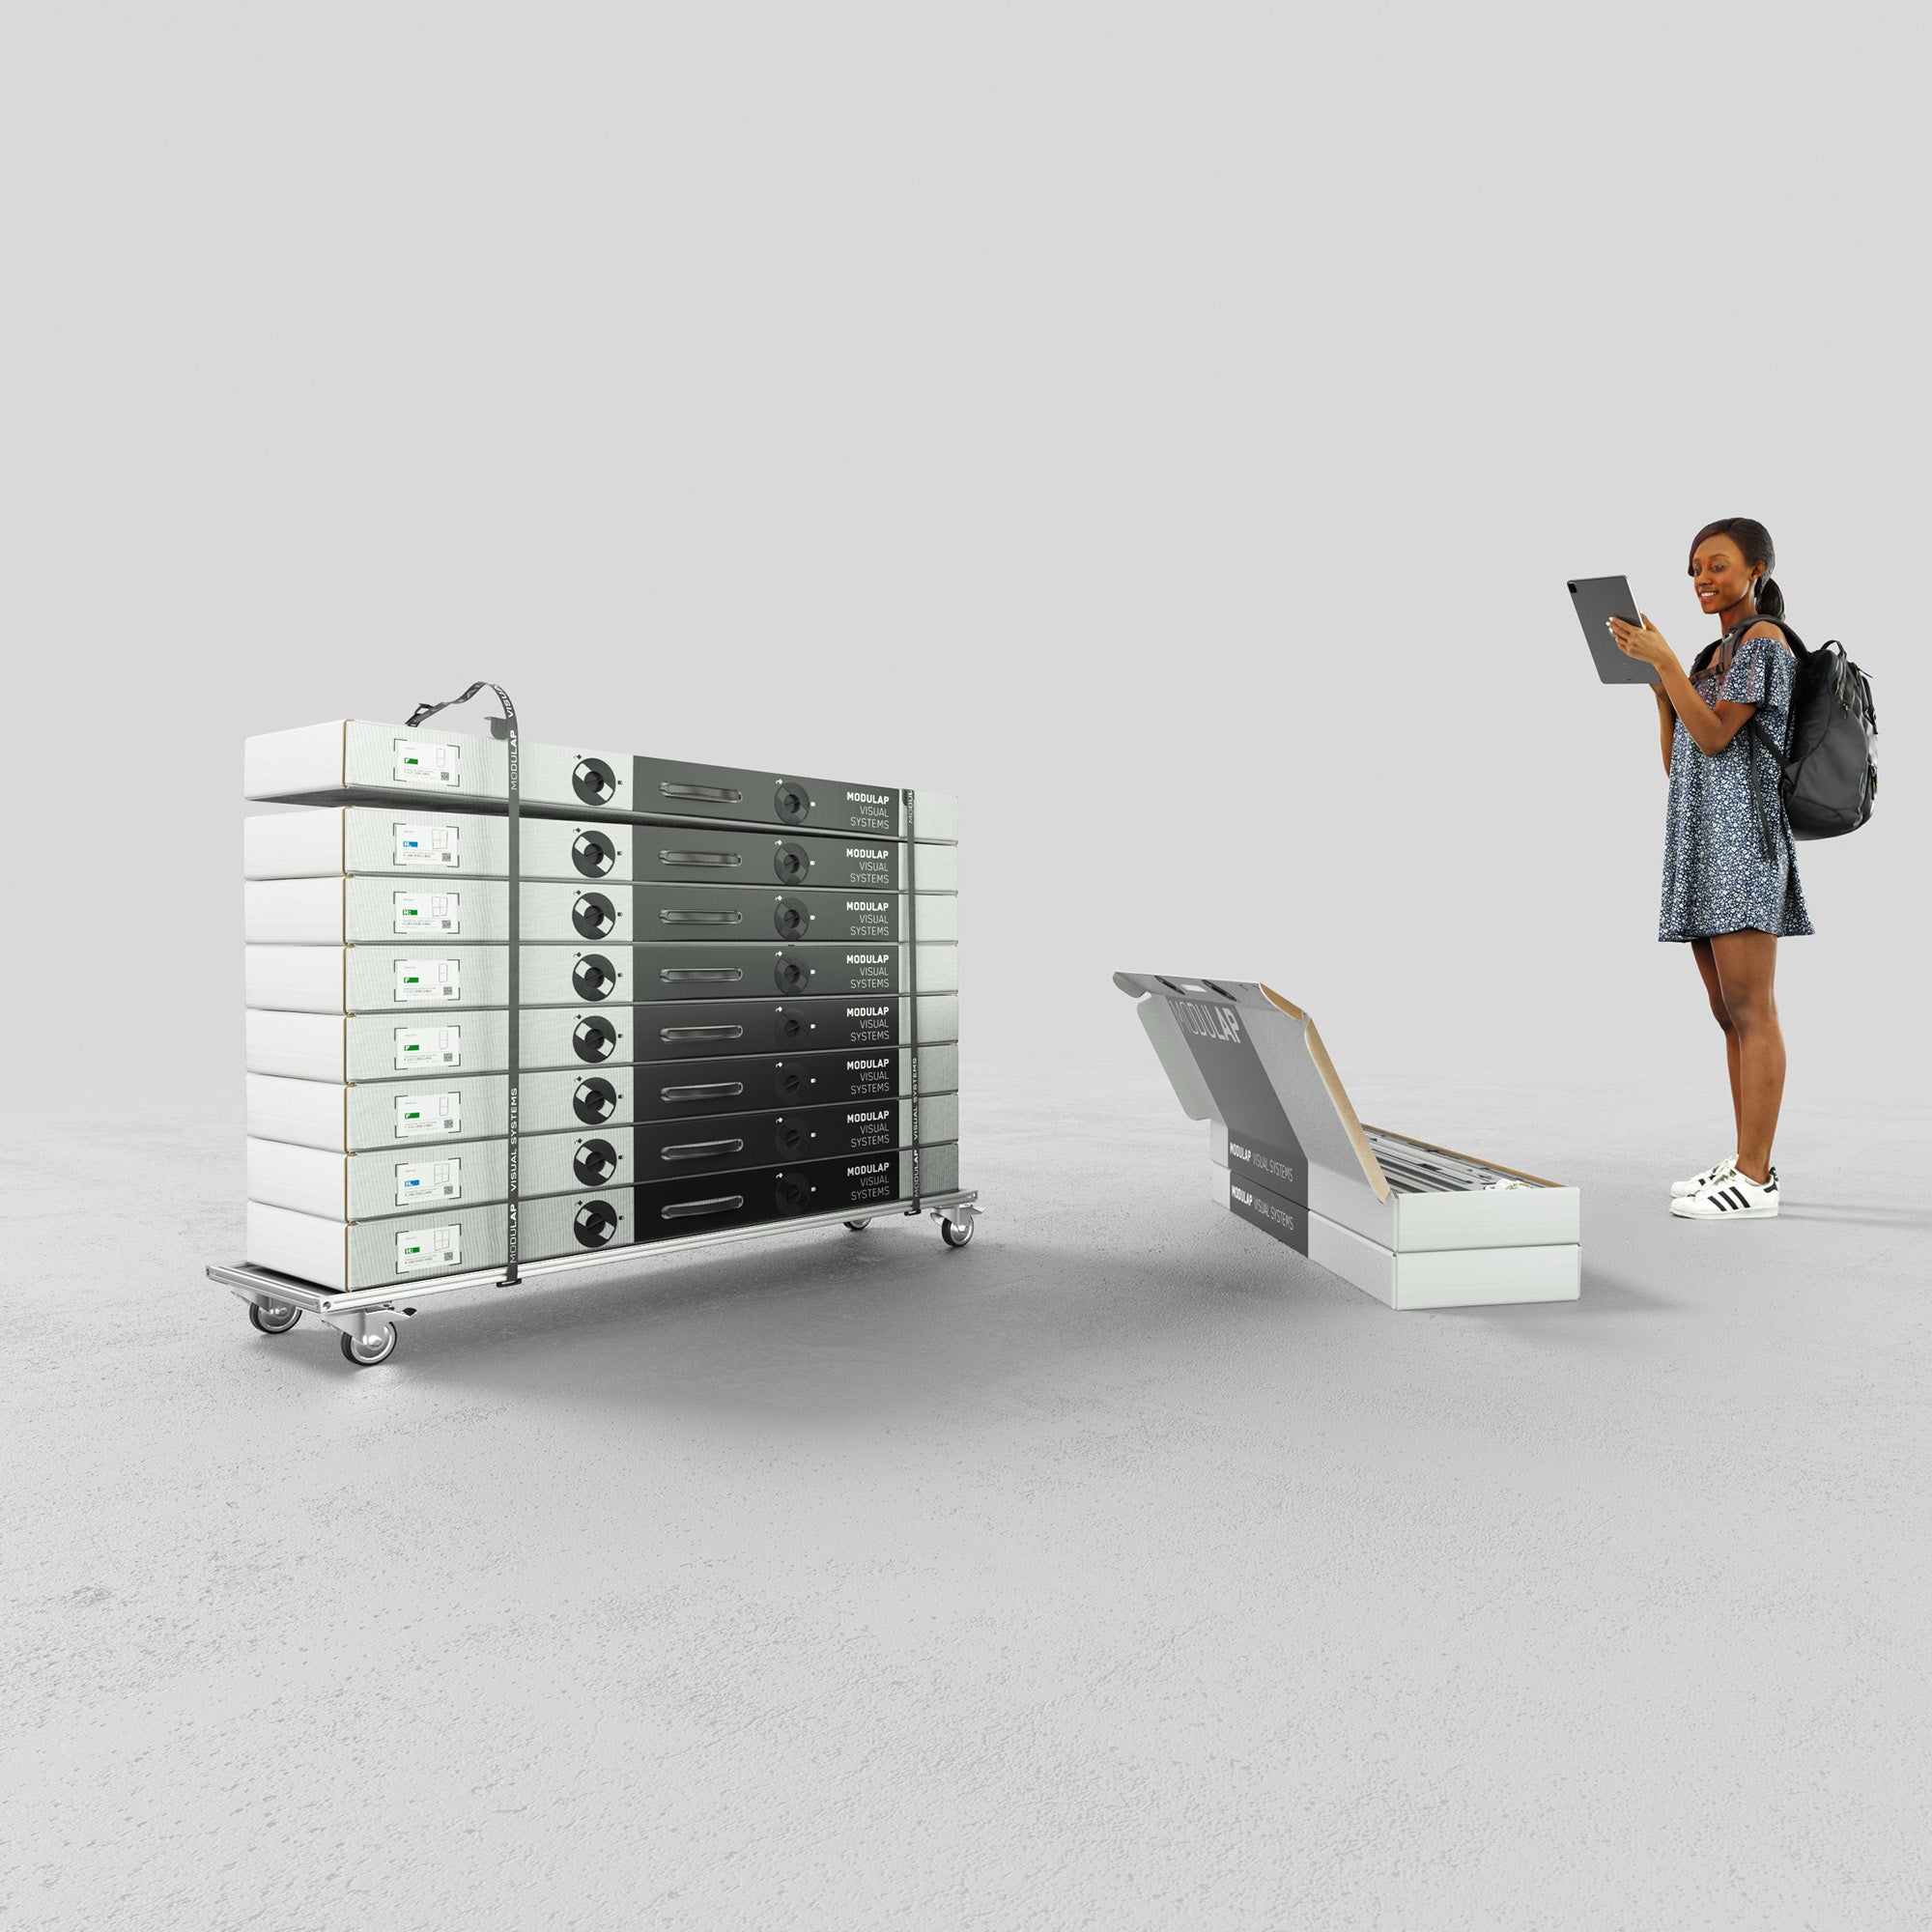  Das Bild zeigt einen Eventstand von Modulap. Links ist ein Rollbrett mit gestapelten Systemverpackungen zu sehen, während rechts eine Frau interessiert auf ein geöffnetes Display-System in einer Systemverpackung blickt. Die Darstellung betont die Mobilität und die einfache Handhabung des Systems.